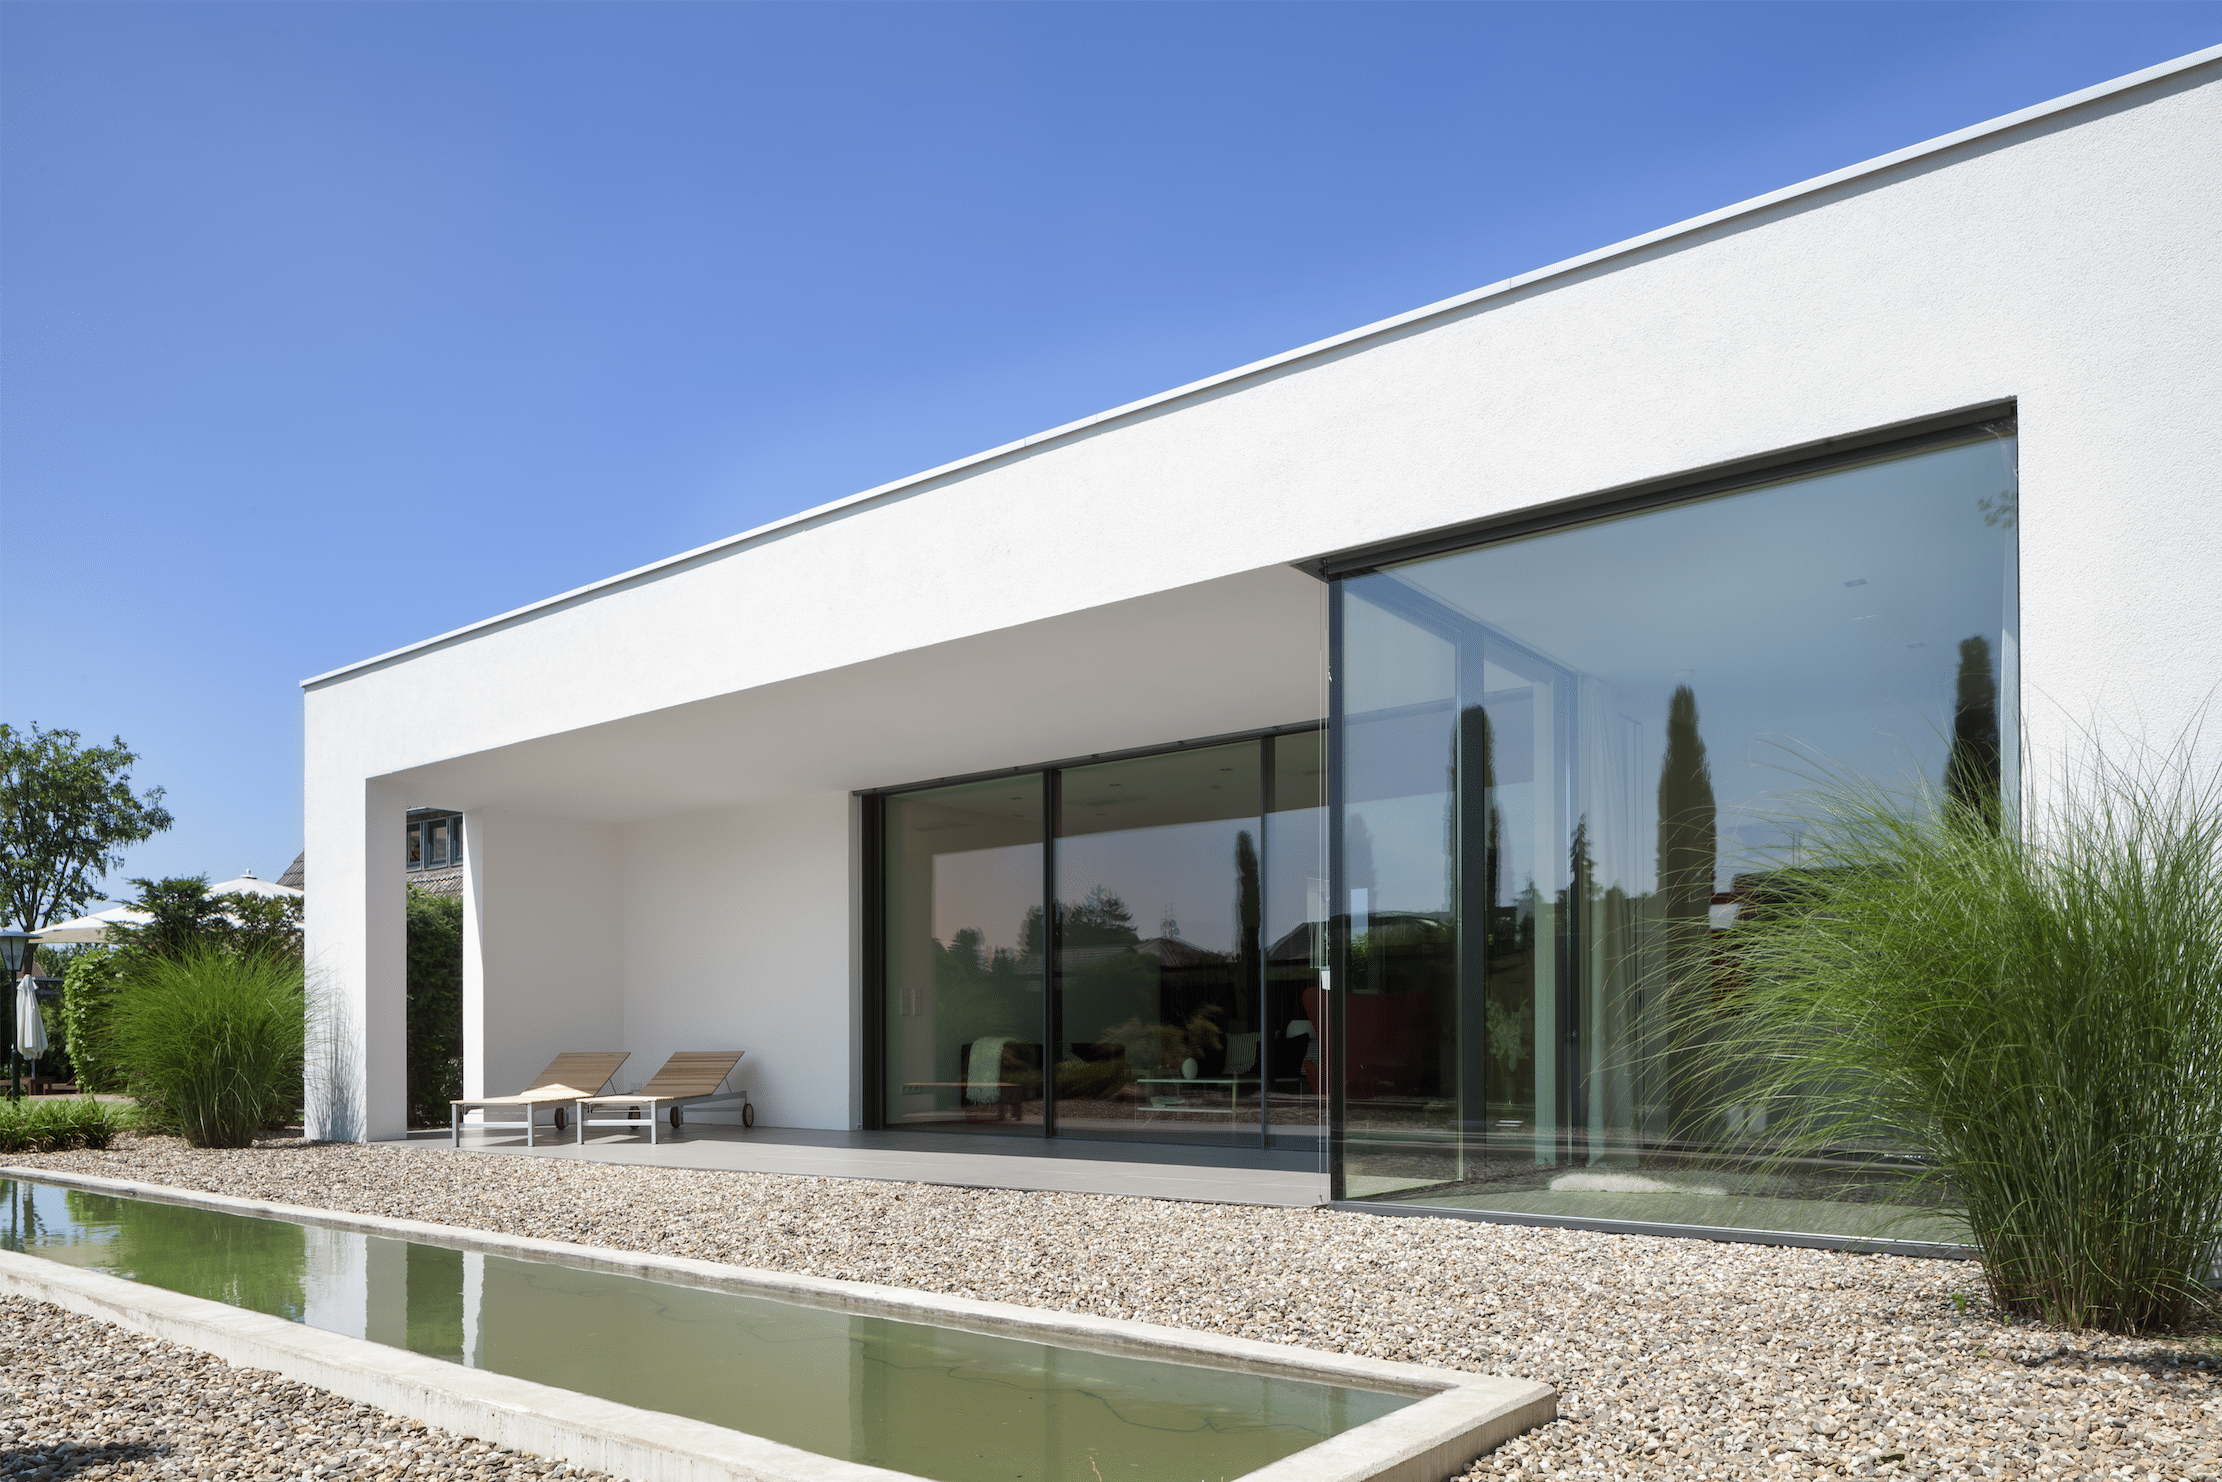 Bungalow mit Pool, großer Terrasse und barrierefreiem, großzügigem Übergang zum Wohnraum dank deckenhoher Glasfronten, bestehend aus Glasschiebetüren von Solarlux.